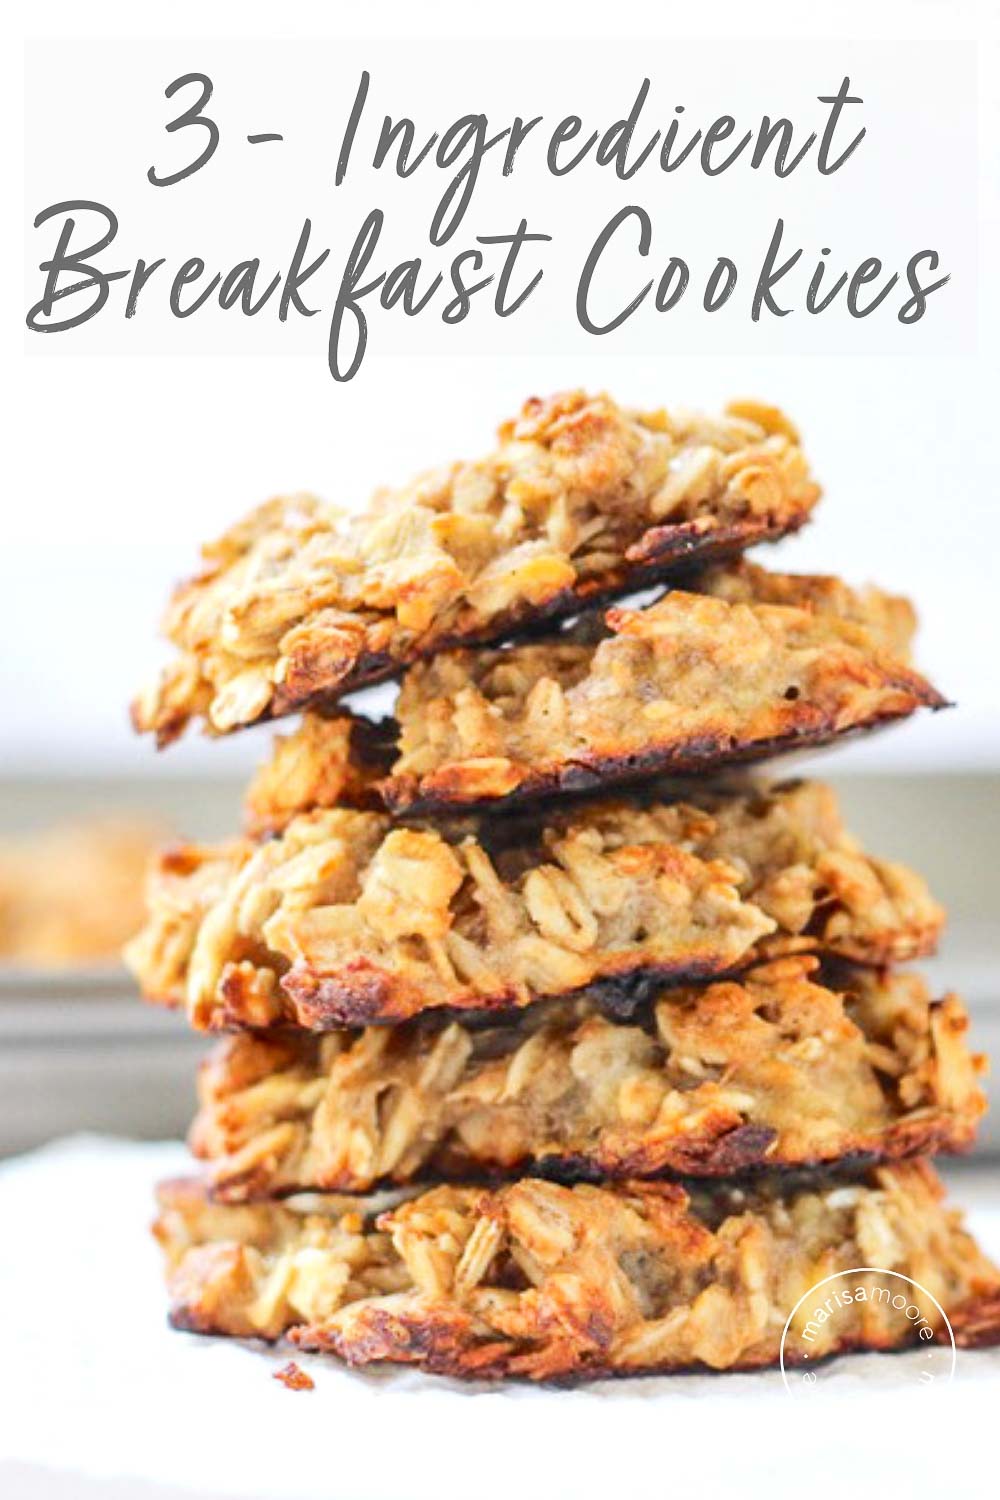 3 Ingredient Breakfast Cookies